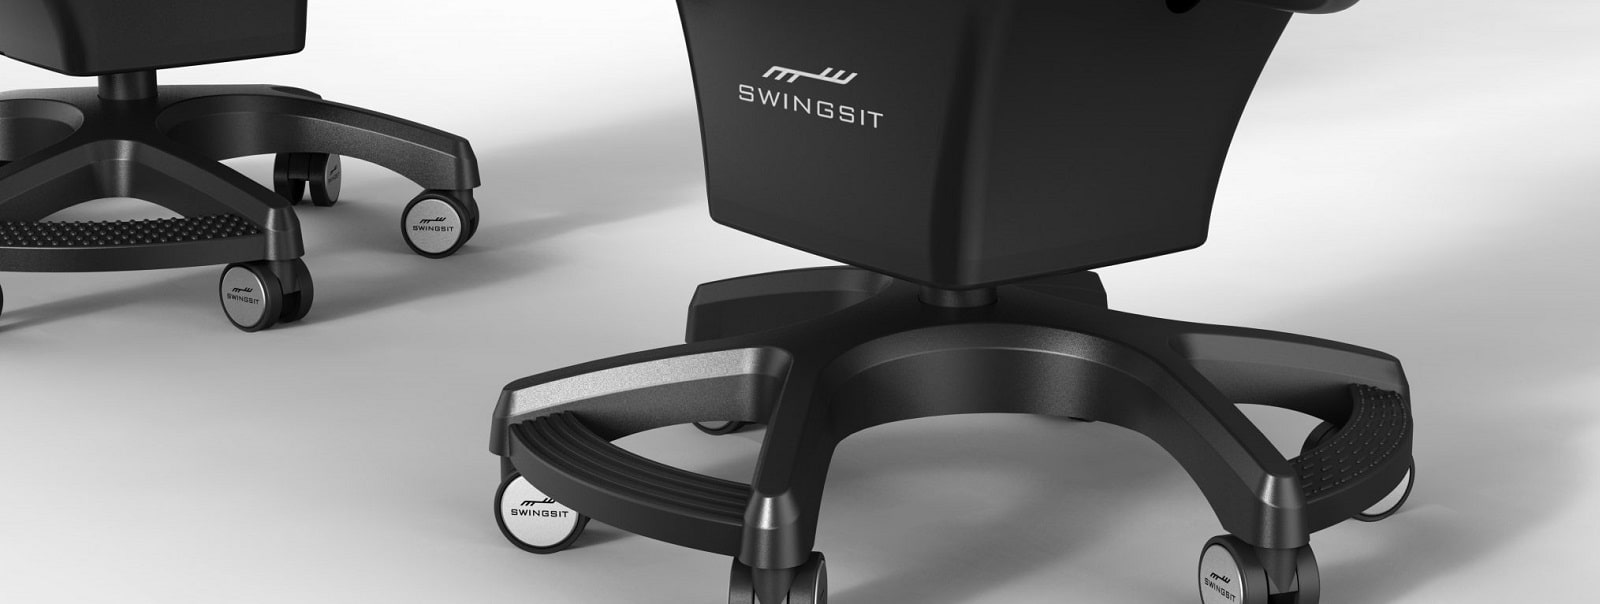 Swingseat - офісний стілець з активним хитанням